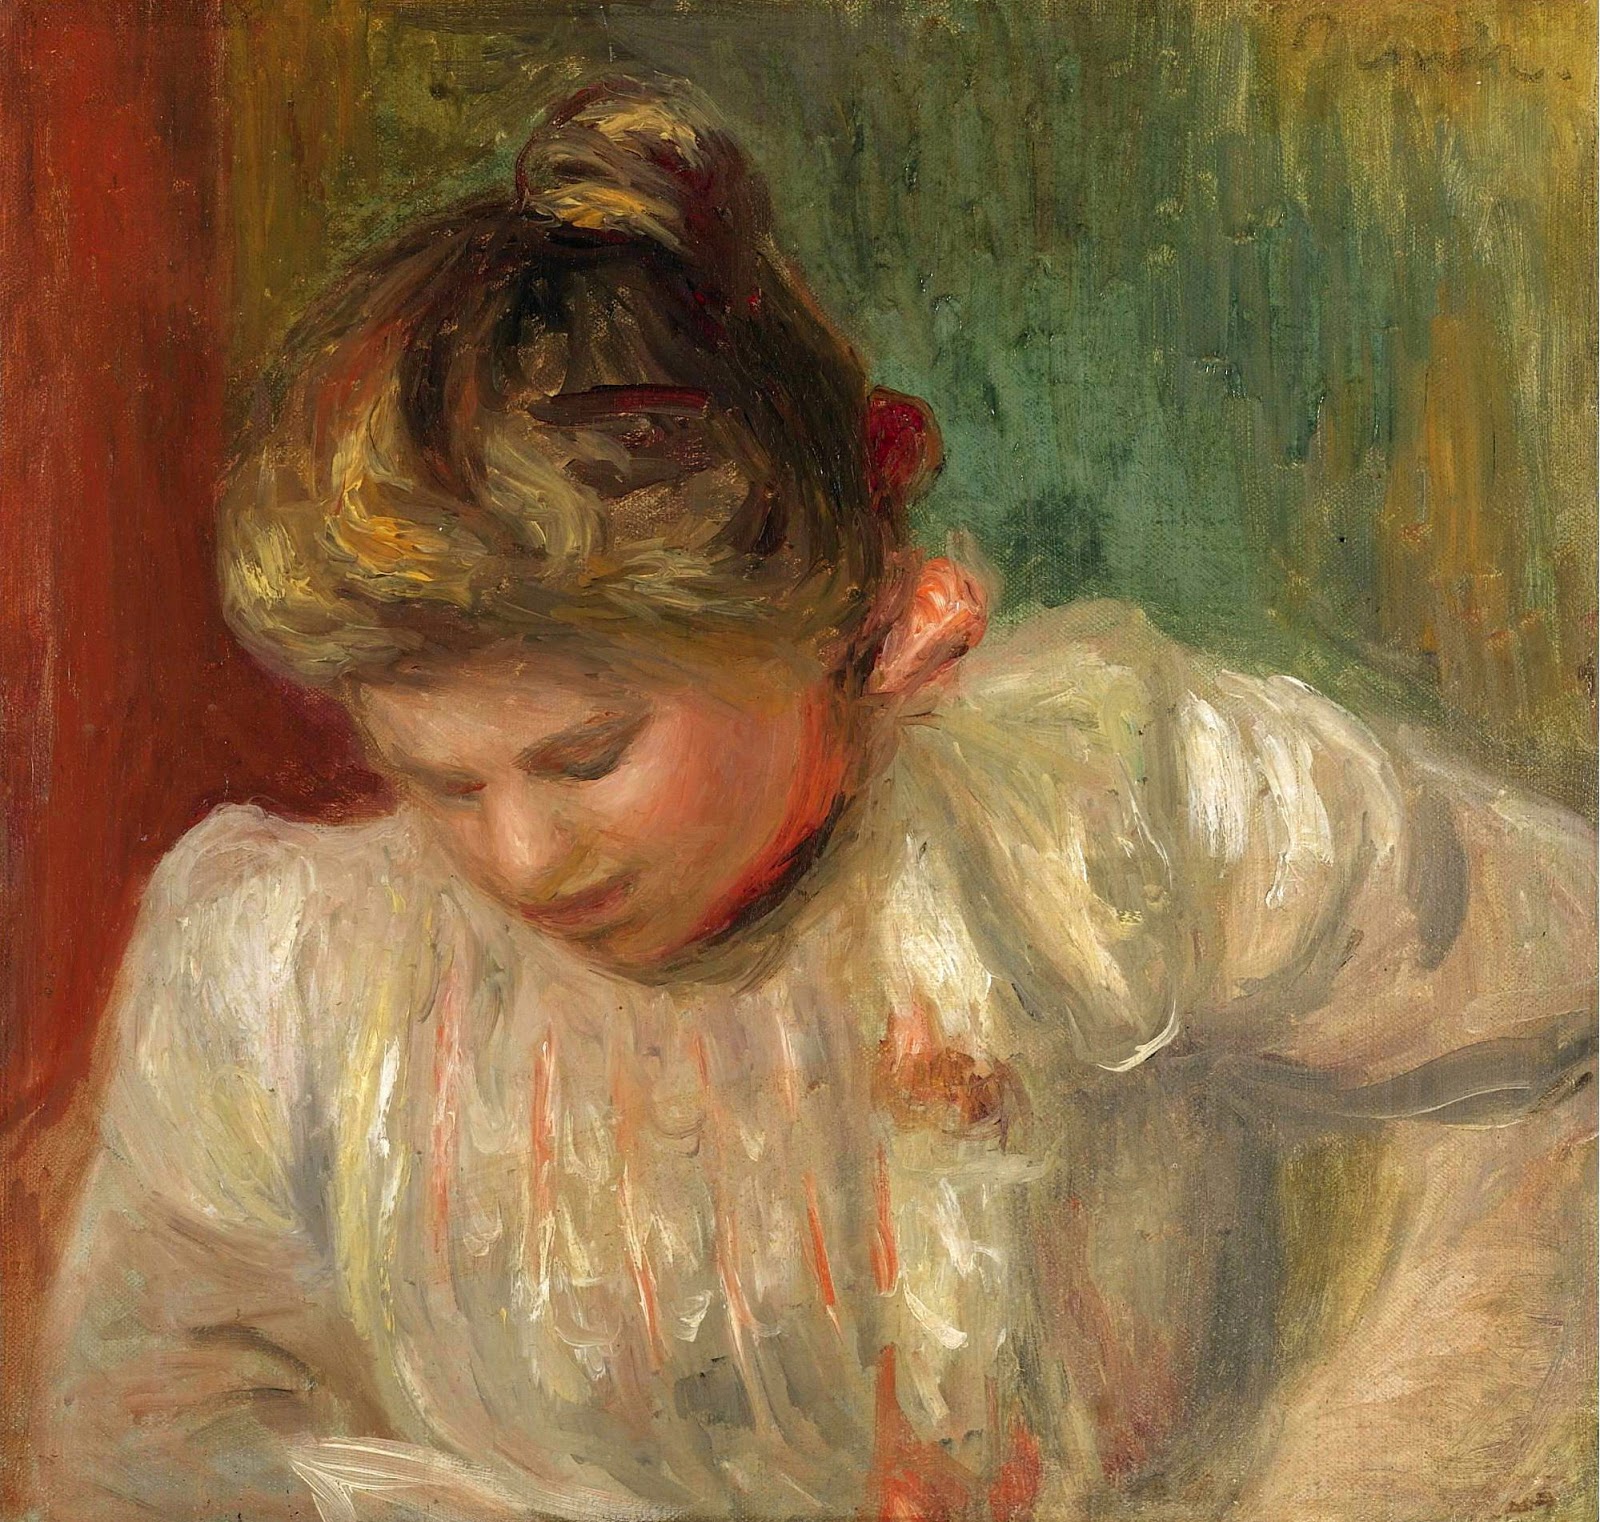 Pierre+Auguste+Renoir-1841-1-19 (800).jpg